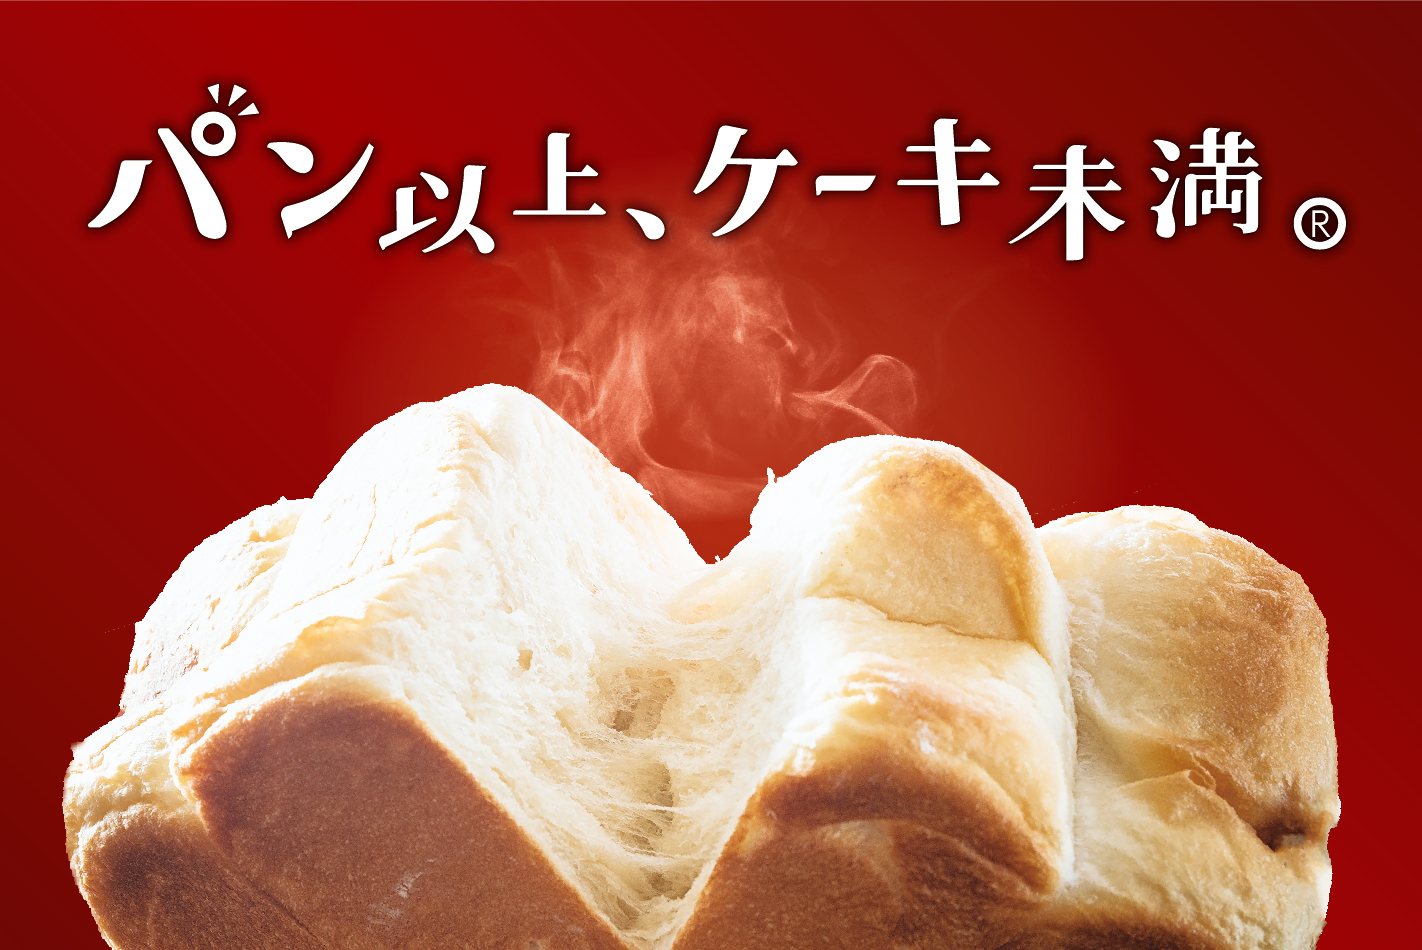 東京都内のユニークなパン屋さん 料理王国